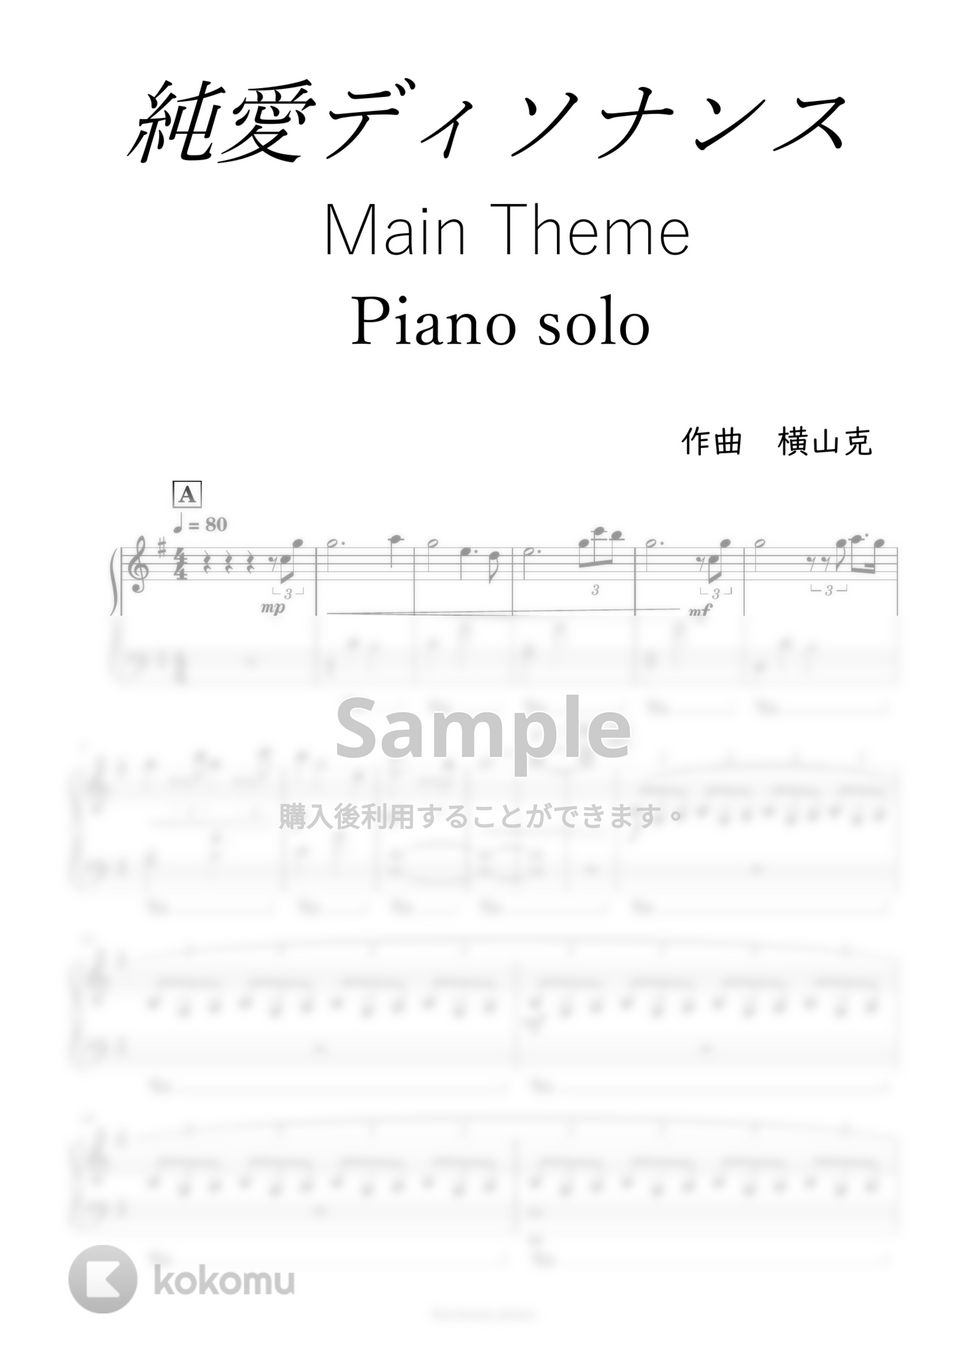 純愛ディソナンス - メインテーマ (ピアノソロ) by harmony piano